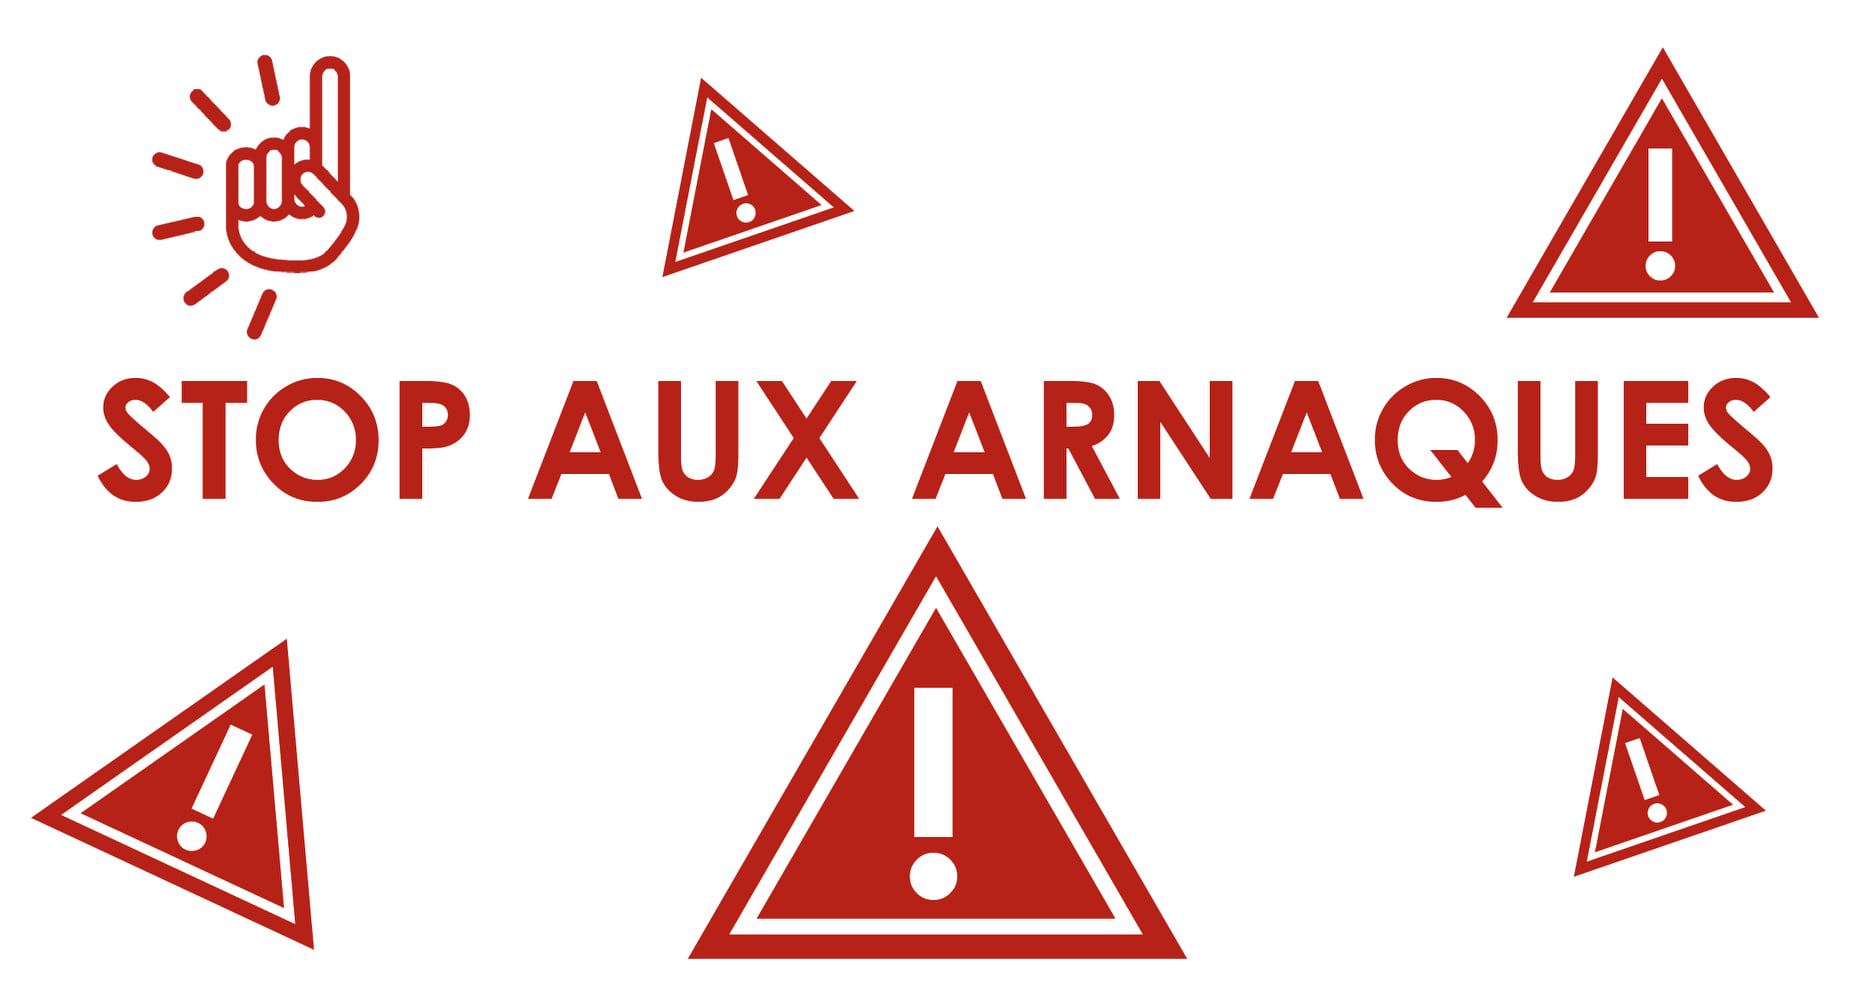 Stop aux arnaques